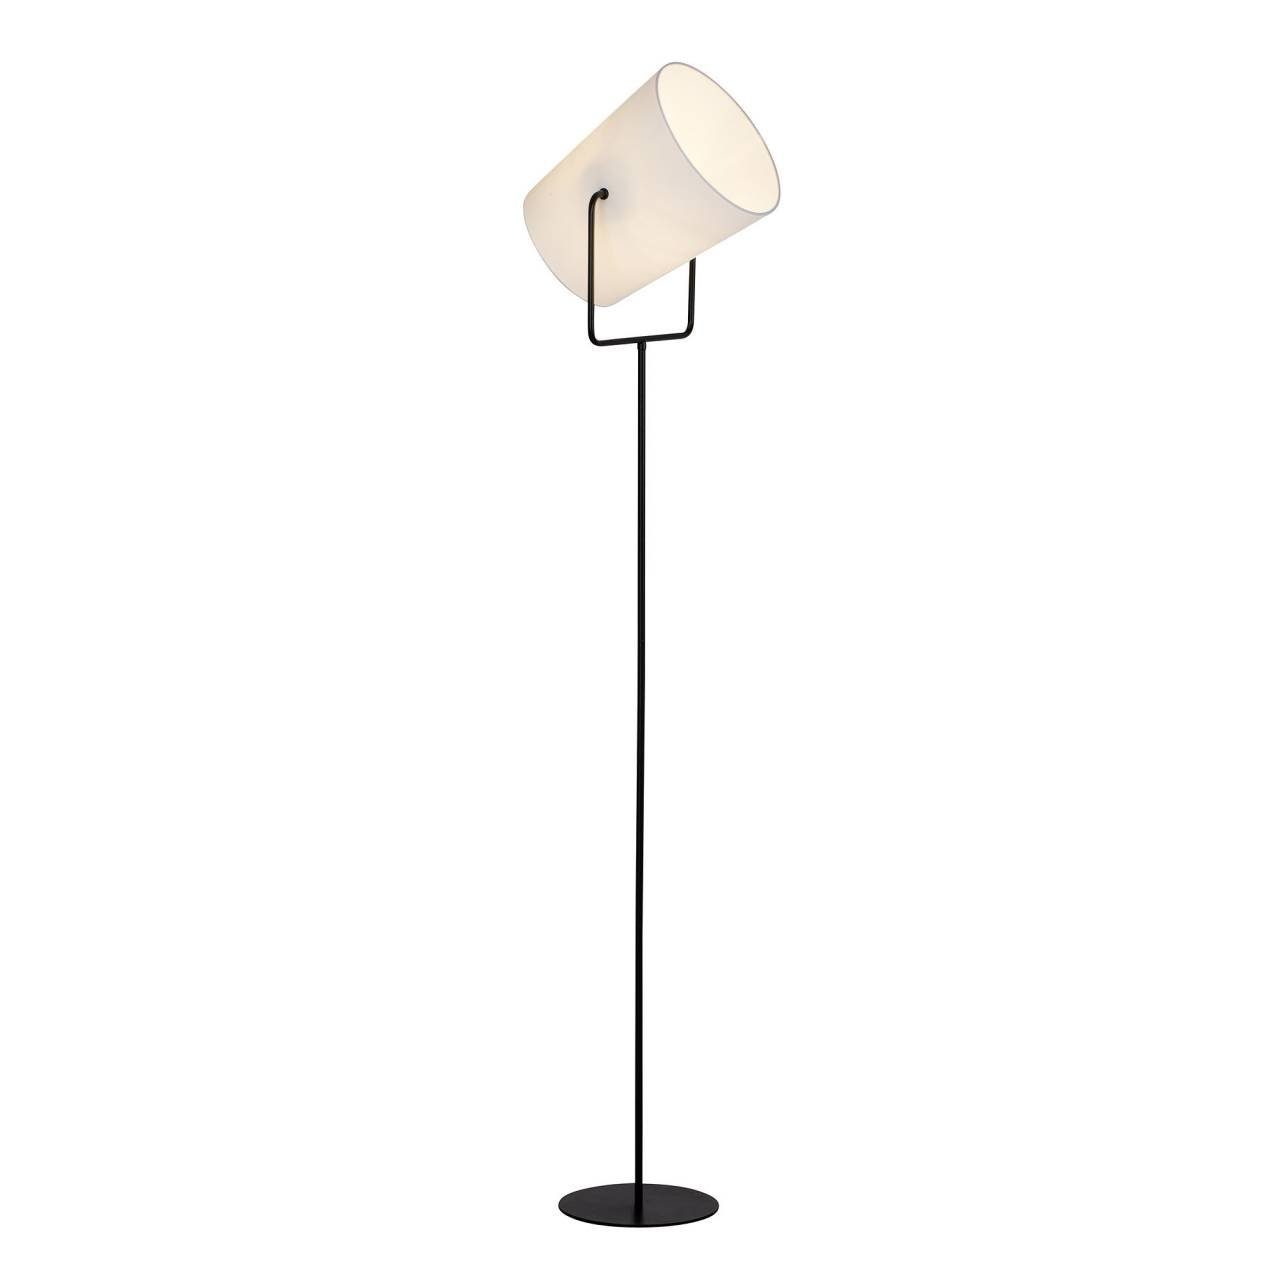 Brilliant Stehlampe Bucket, Lampe Bucket Standleuchte 60W, E27, schwarz/weiß 1flg A60, geeign 1x